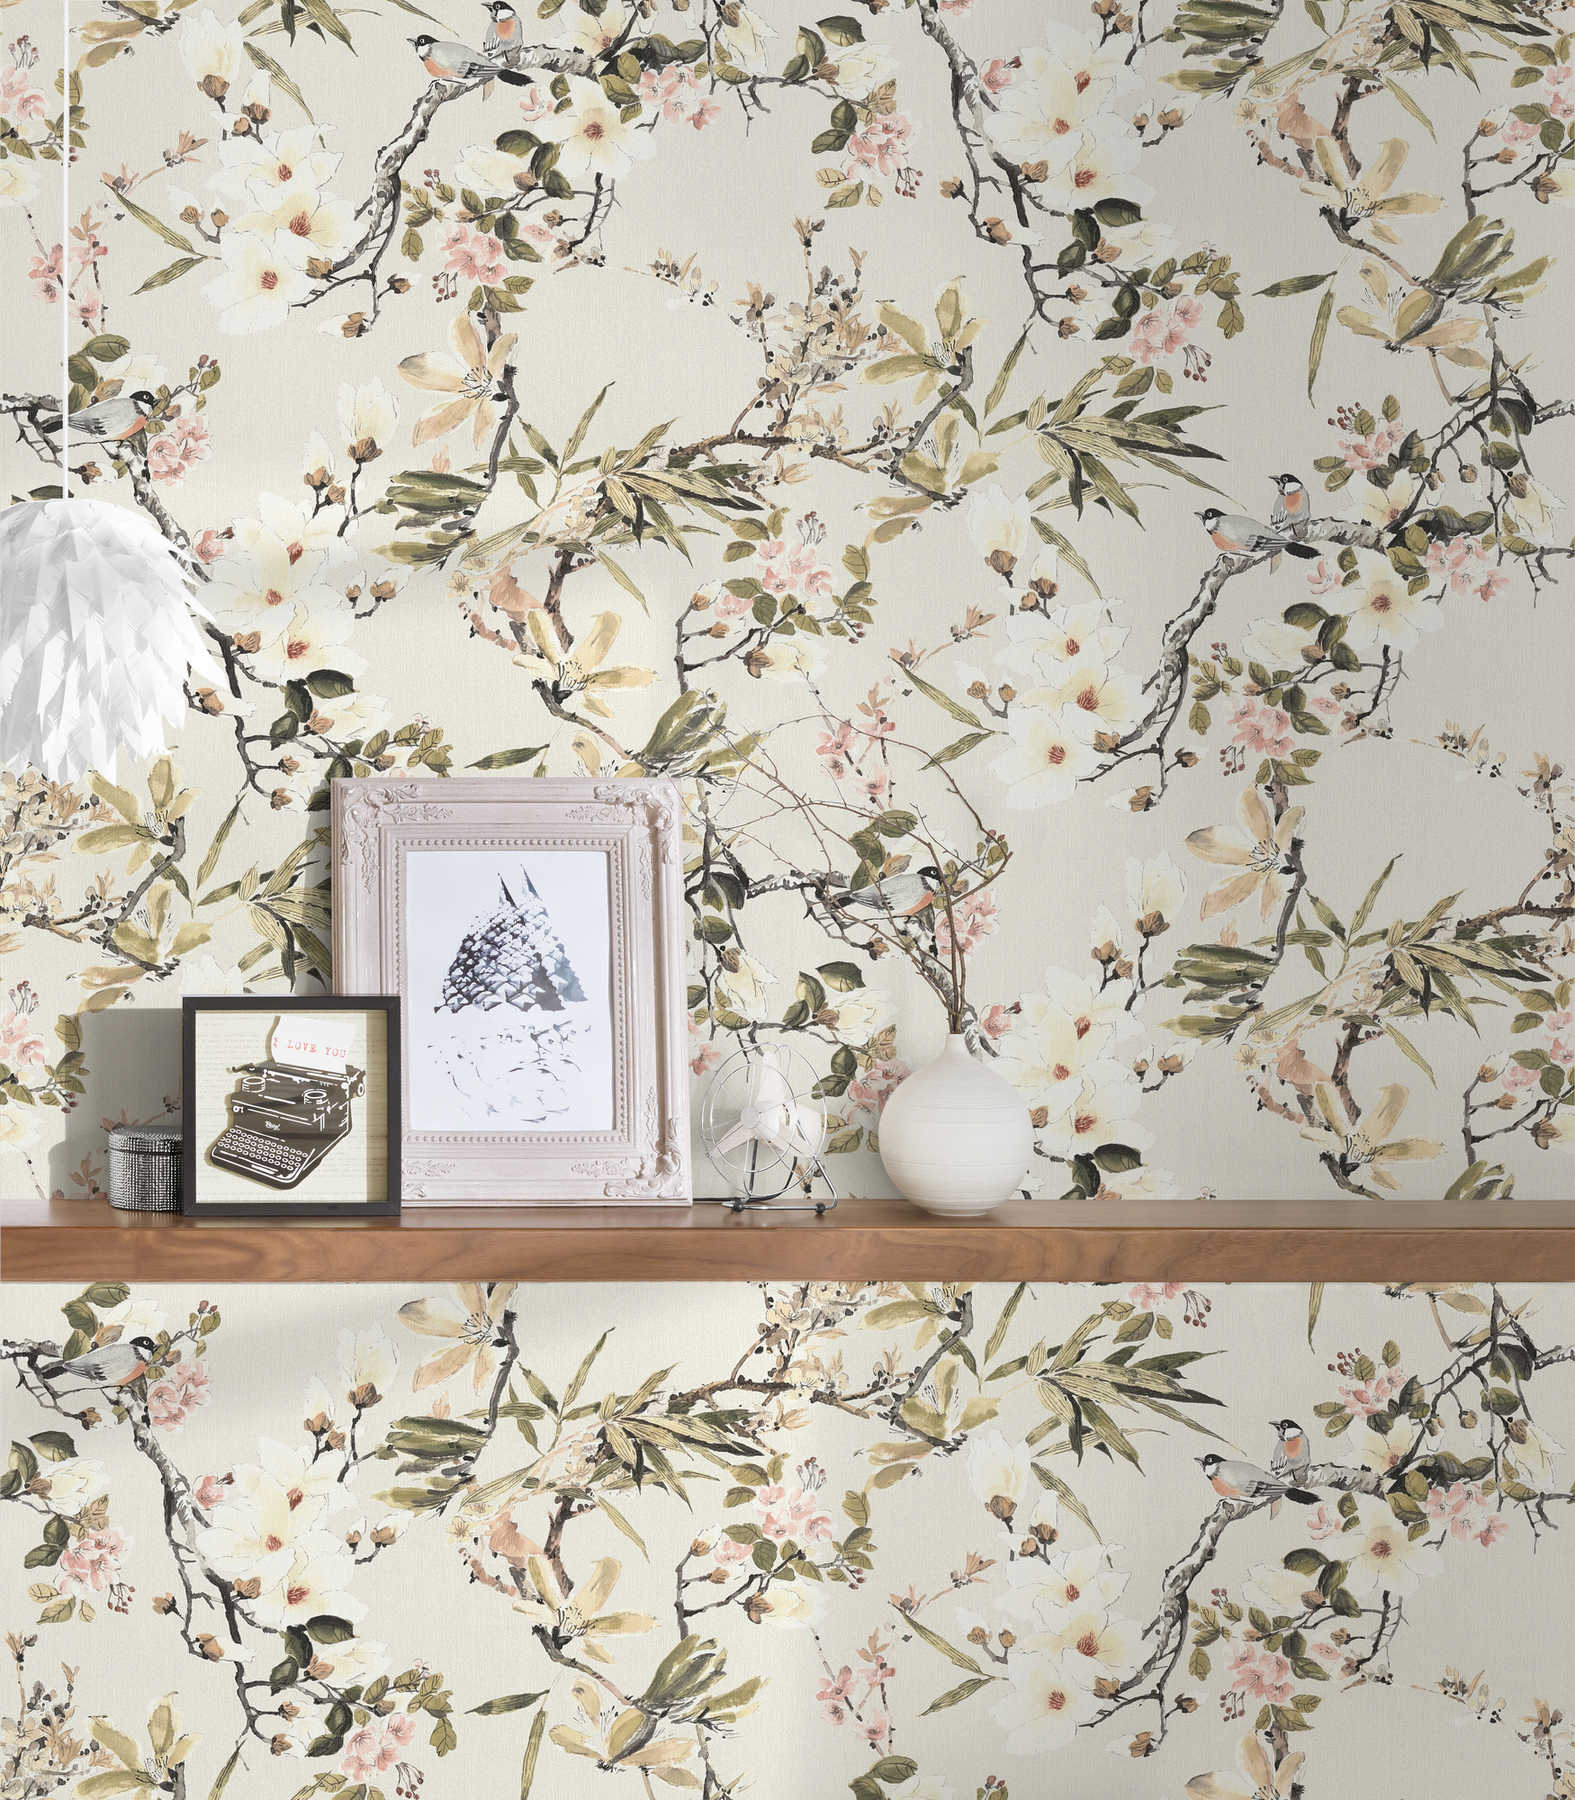             Papier peint intissé Nature Design fleurs branches & oiseaux - beige, multicolore
        